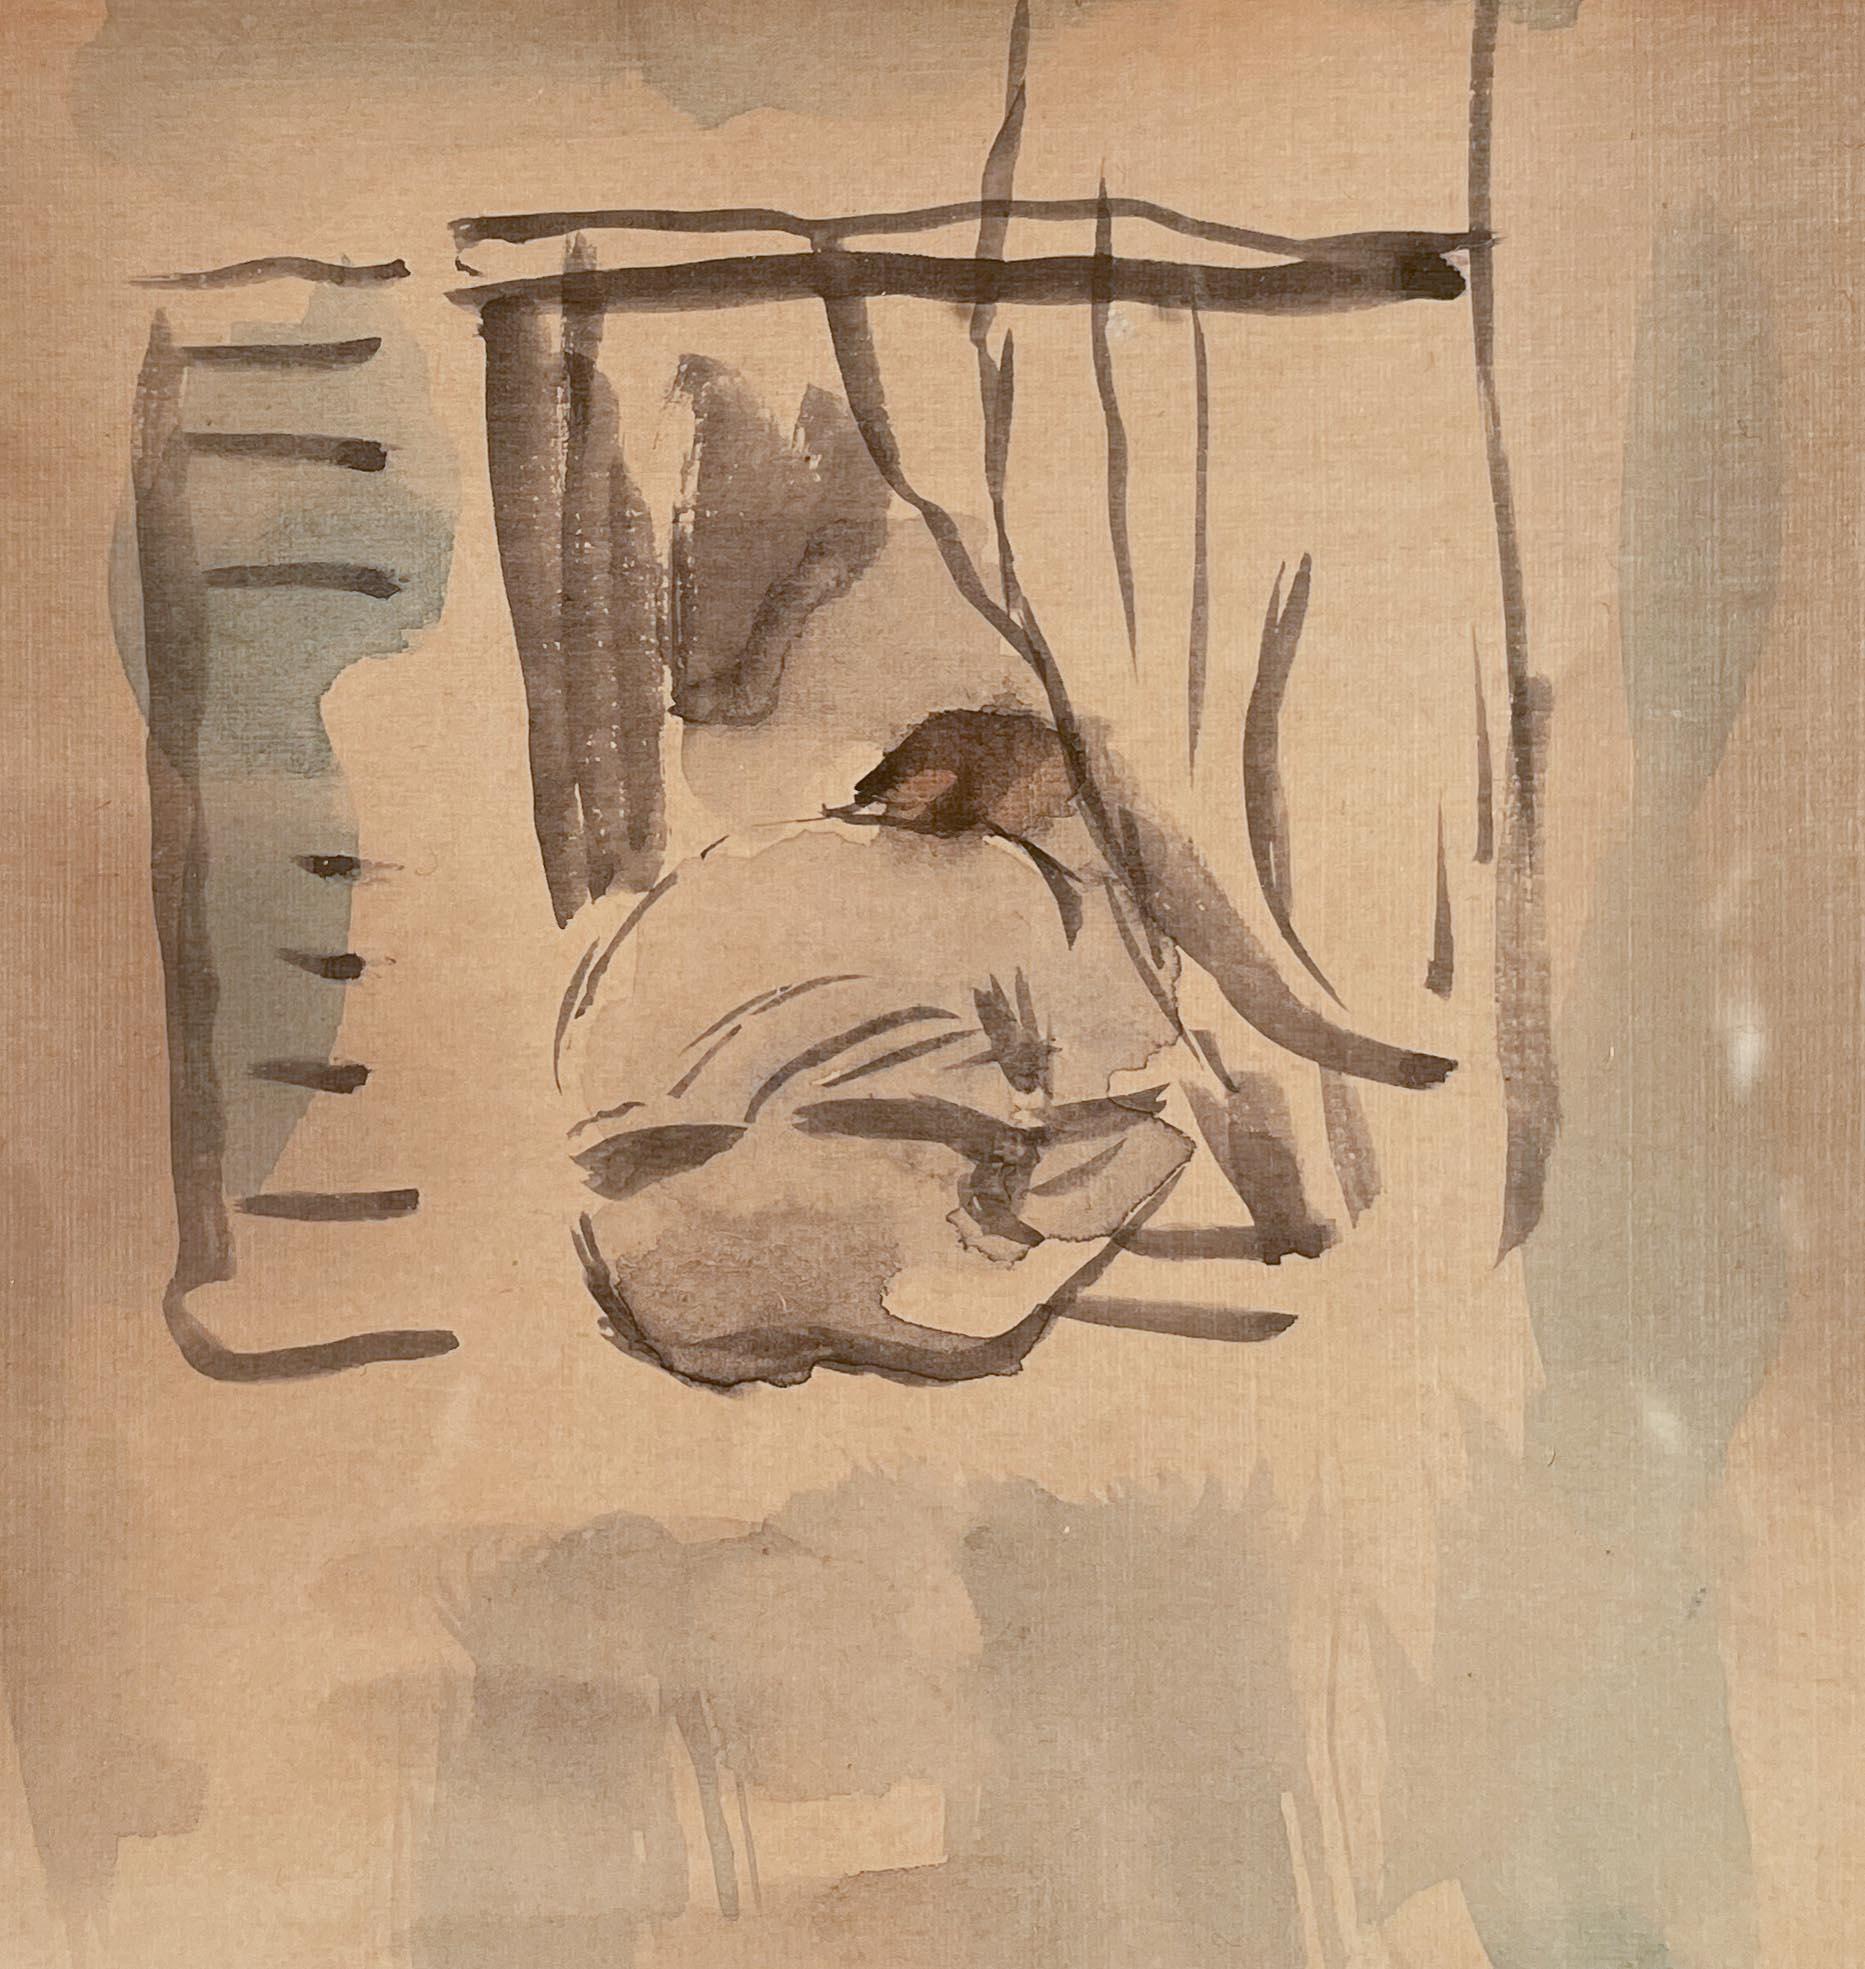 Figure regardant par la fenêtre par Jules Pascin (1885-1930)
Aquarelle sur papier
5 ¼ x 4 ½ pouces non encadré (13.335 x 11.43 cm)
13 ¾ x 10 ⅜ pouces encadré (34,925 x 27,002 cm)
Signé et daté en bas à gauche
Estampillé d'un timbre de